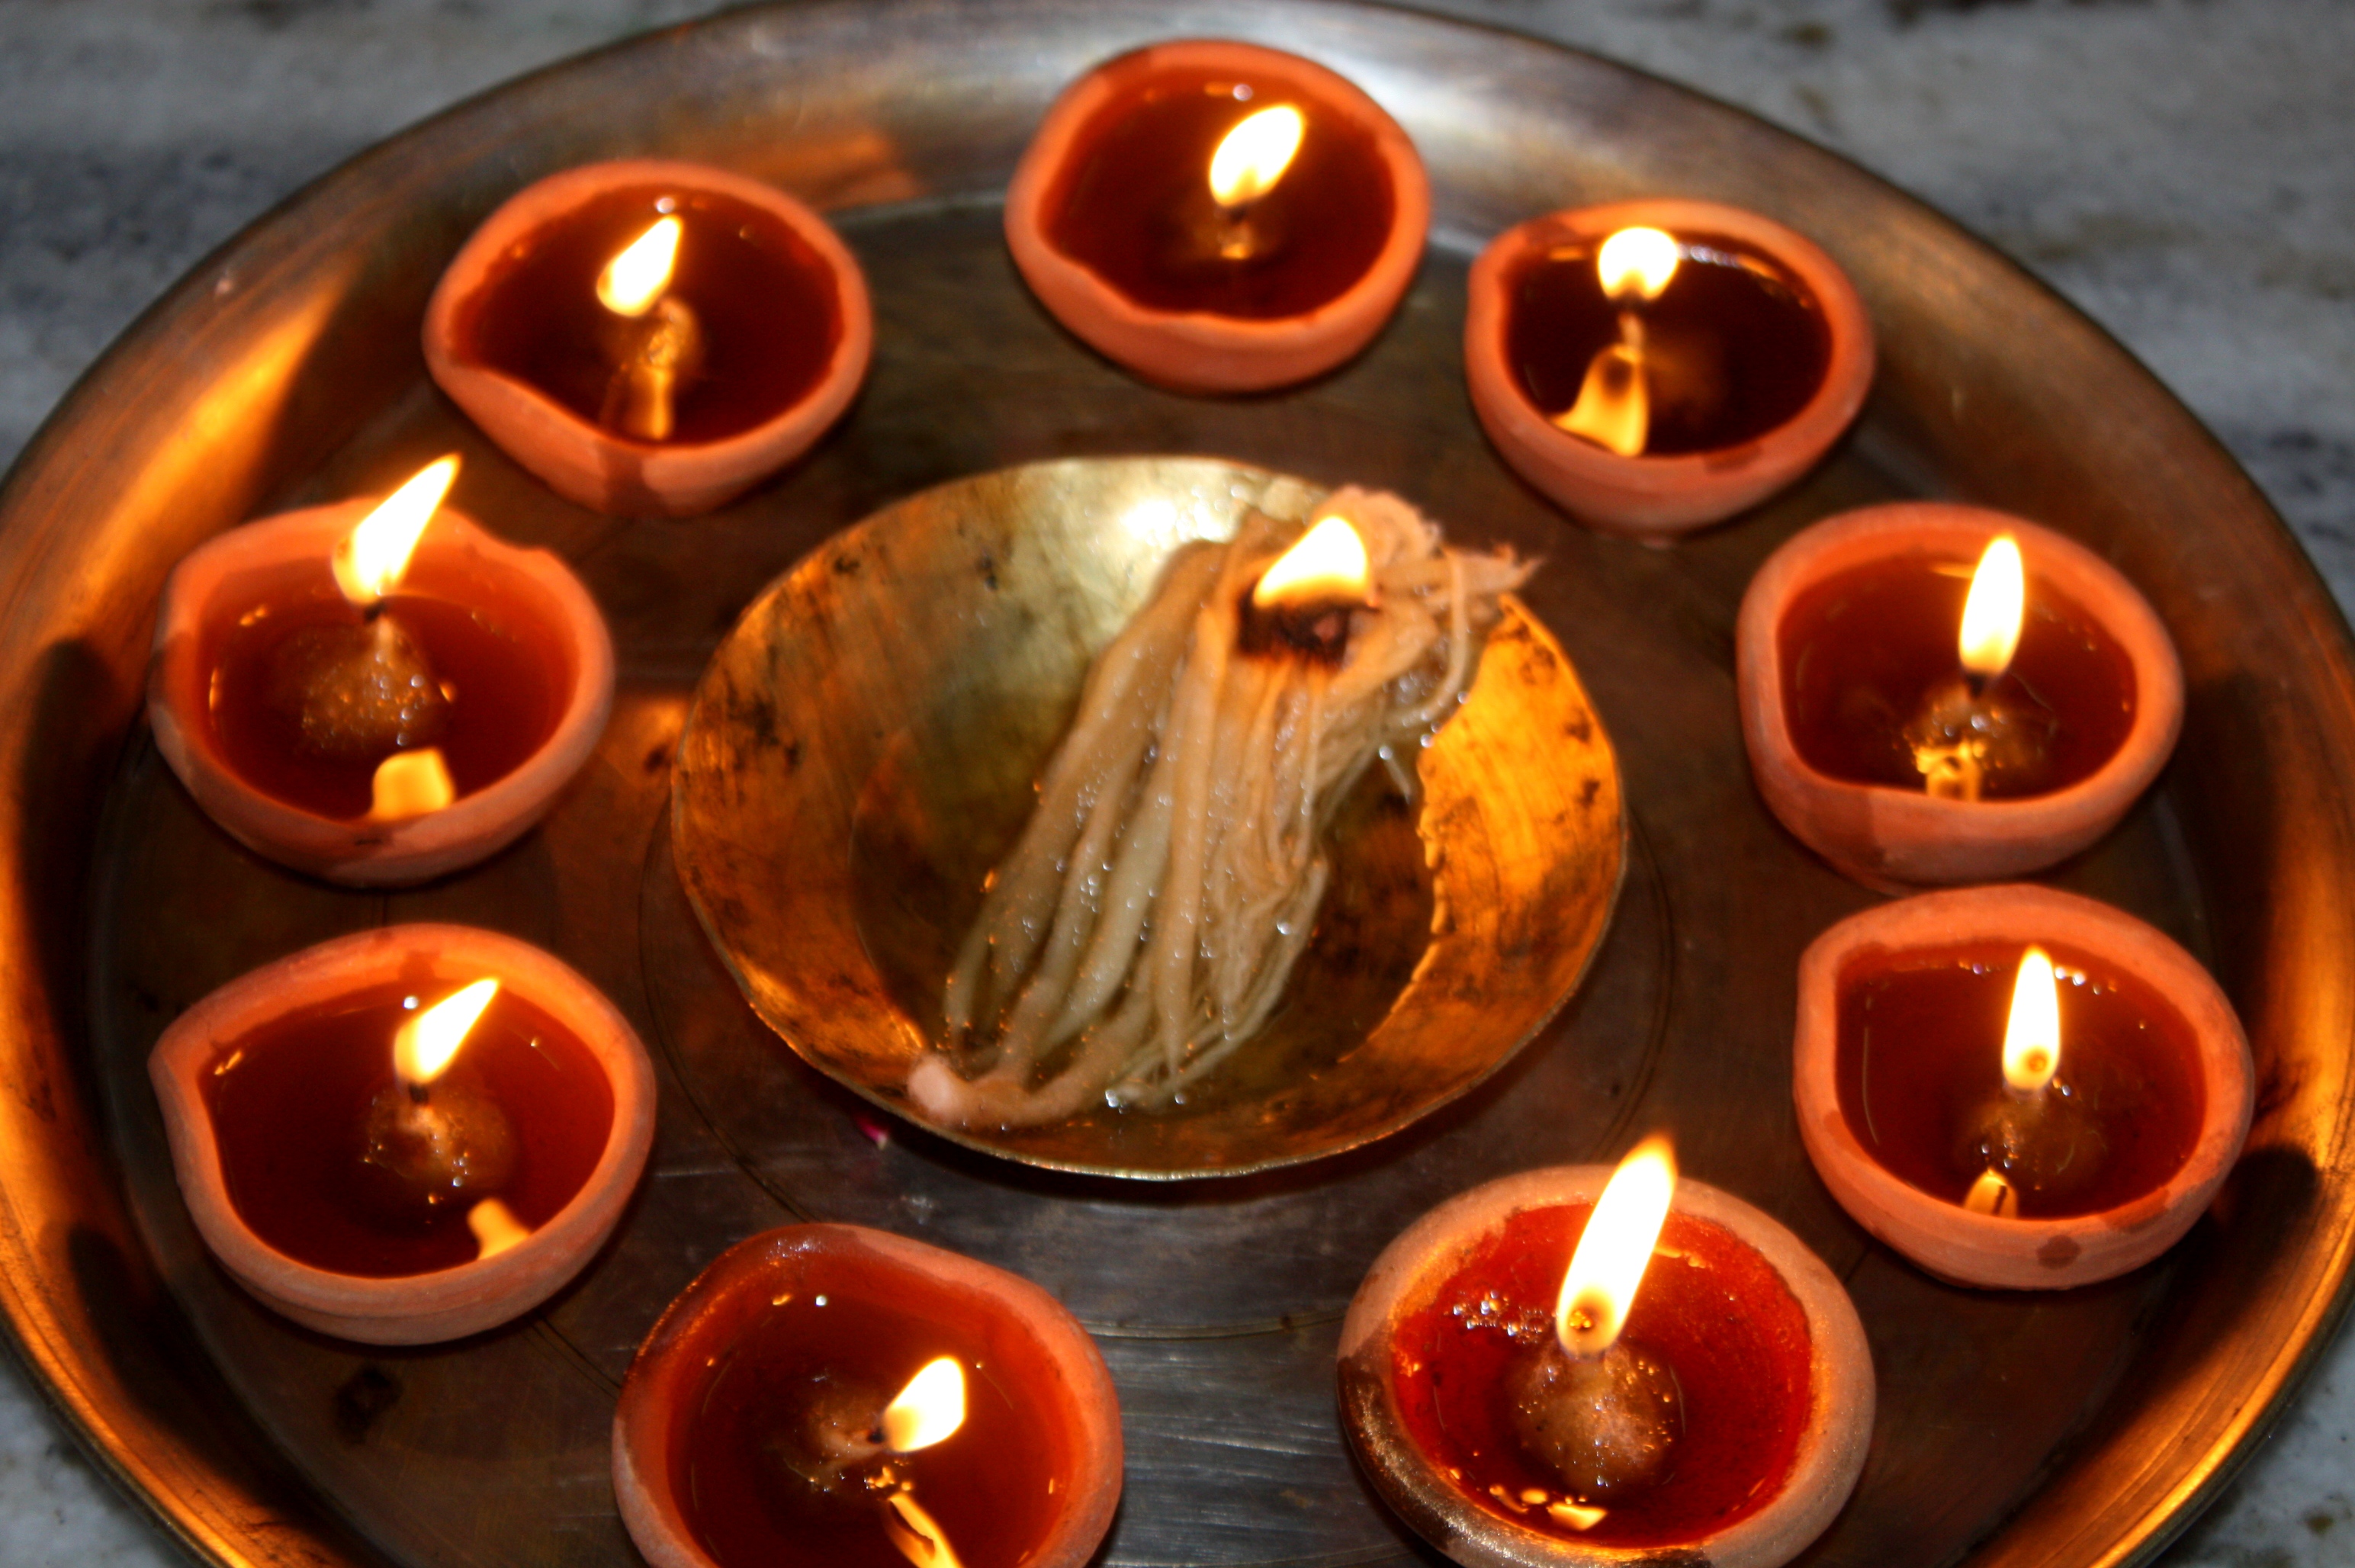 Diwali Wikipedia In Sanskrit